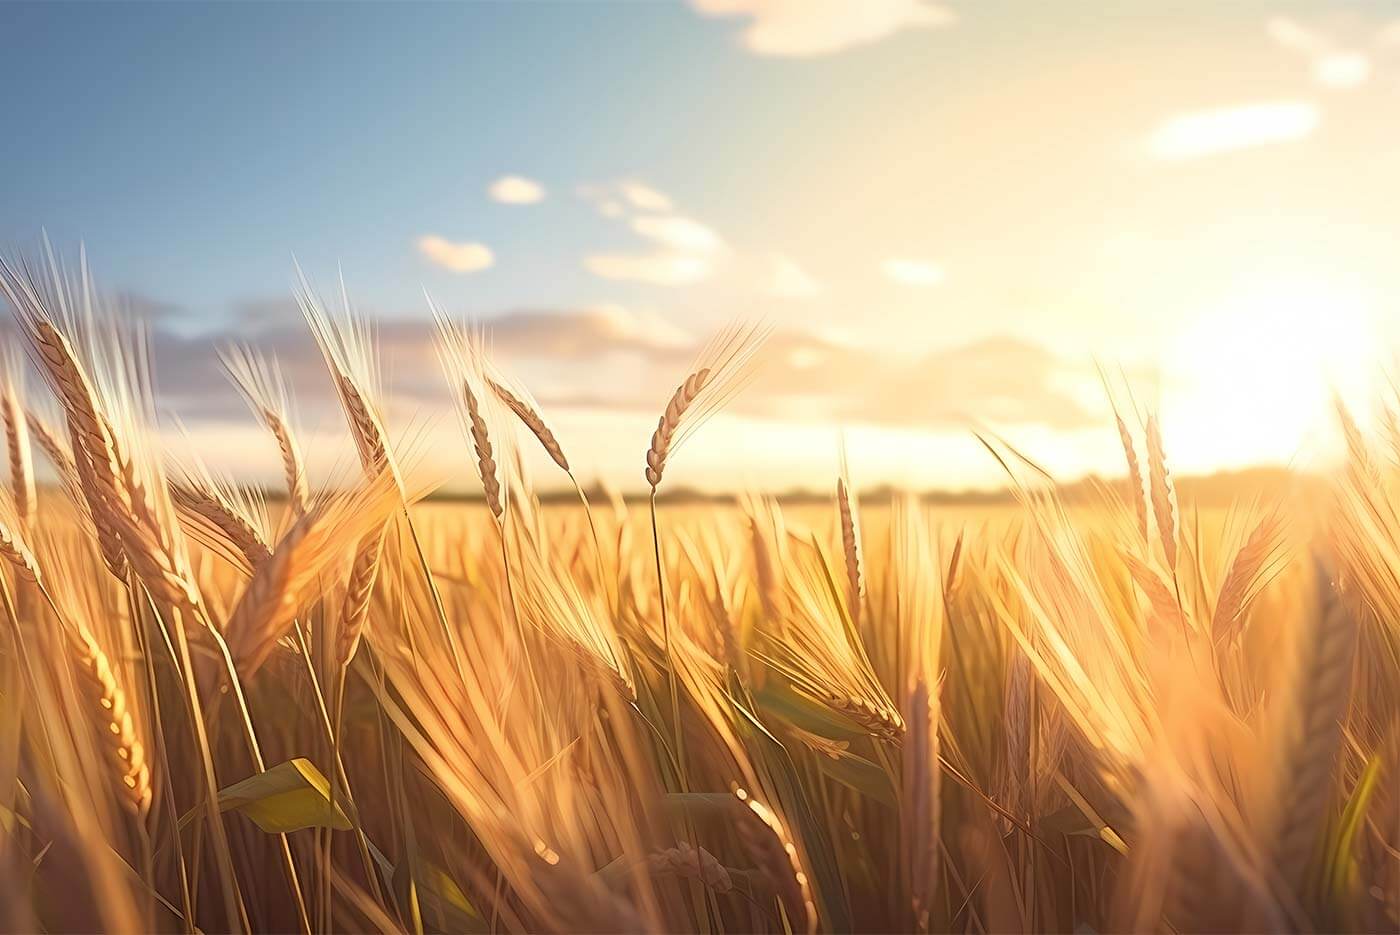 Sun setting against a blue sky over a golden wheat grass field.